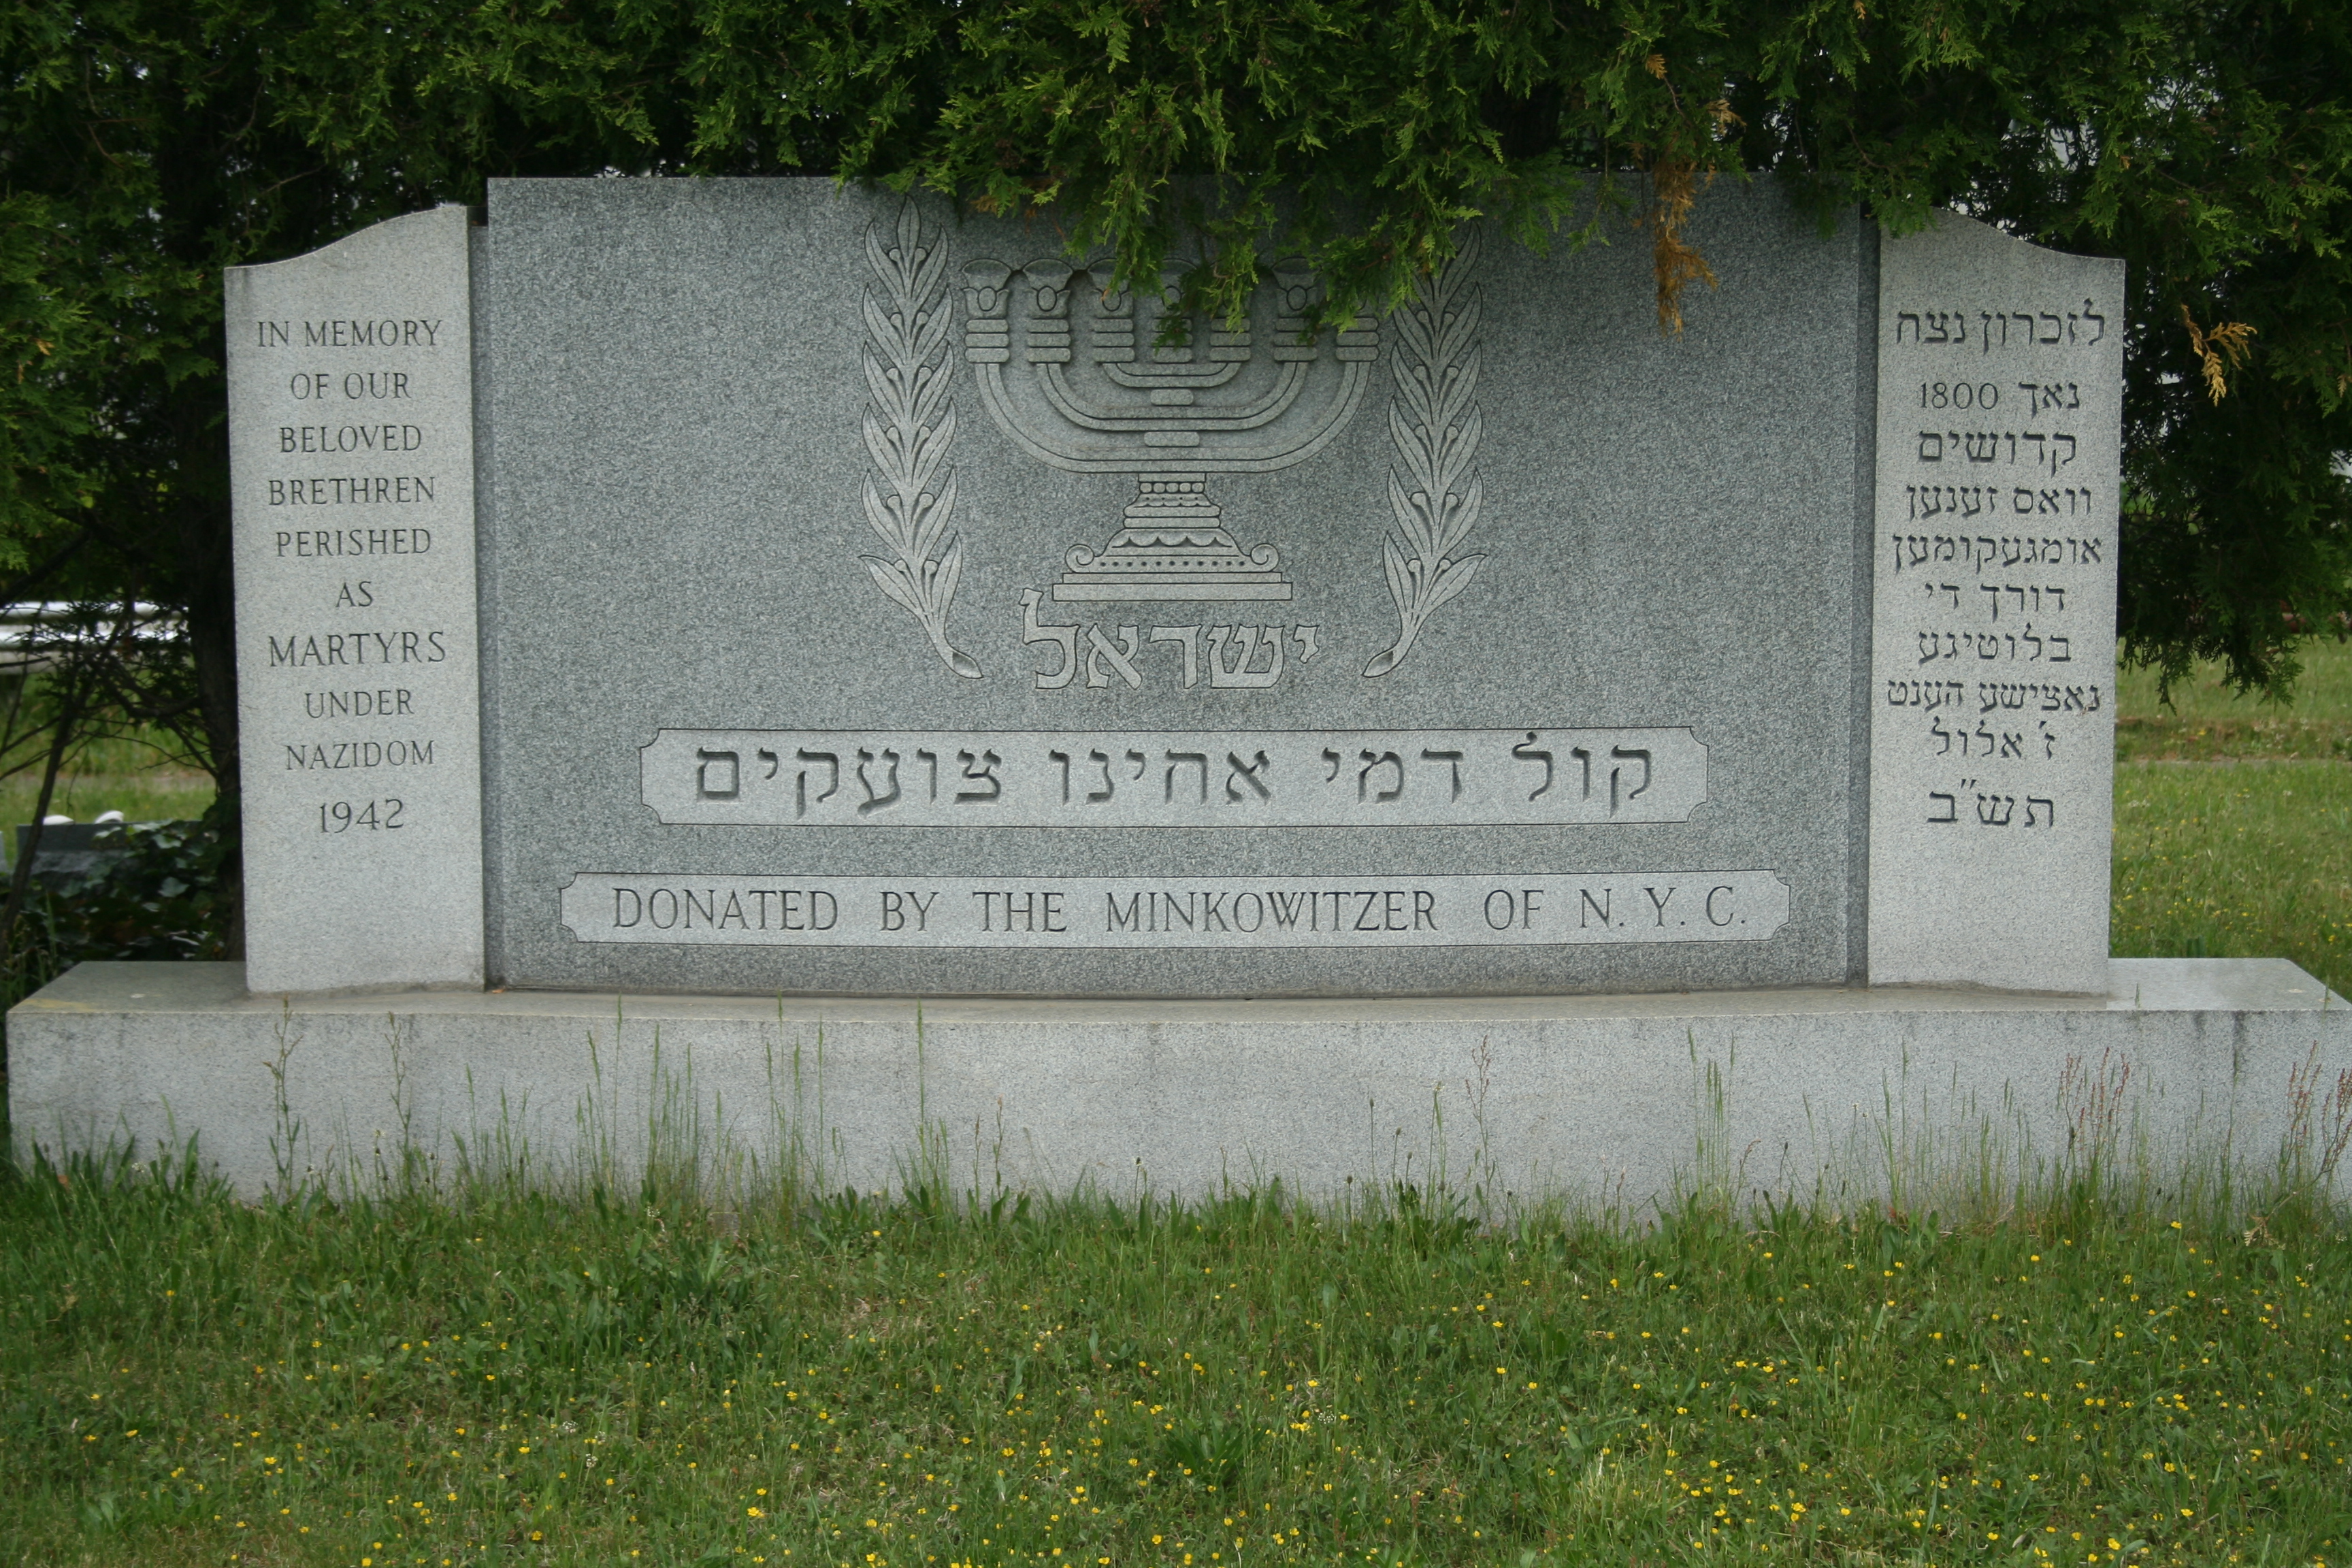 Landmanshaft Memorial